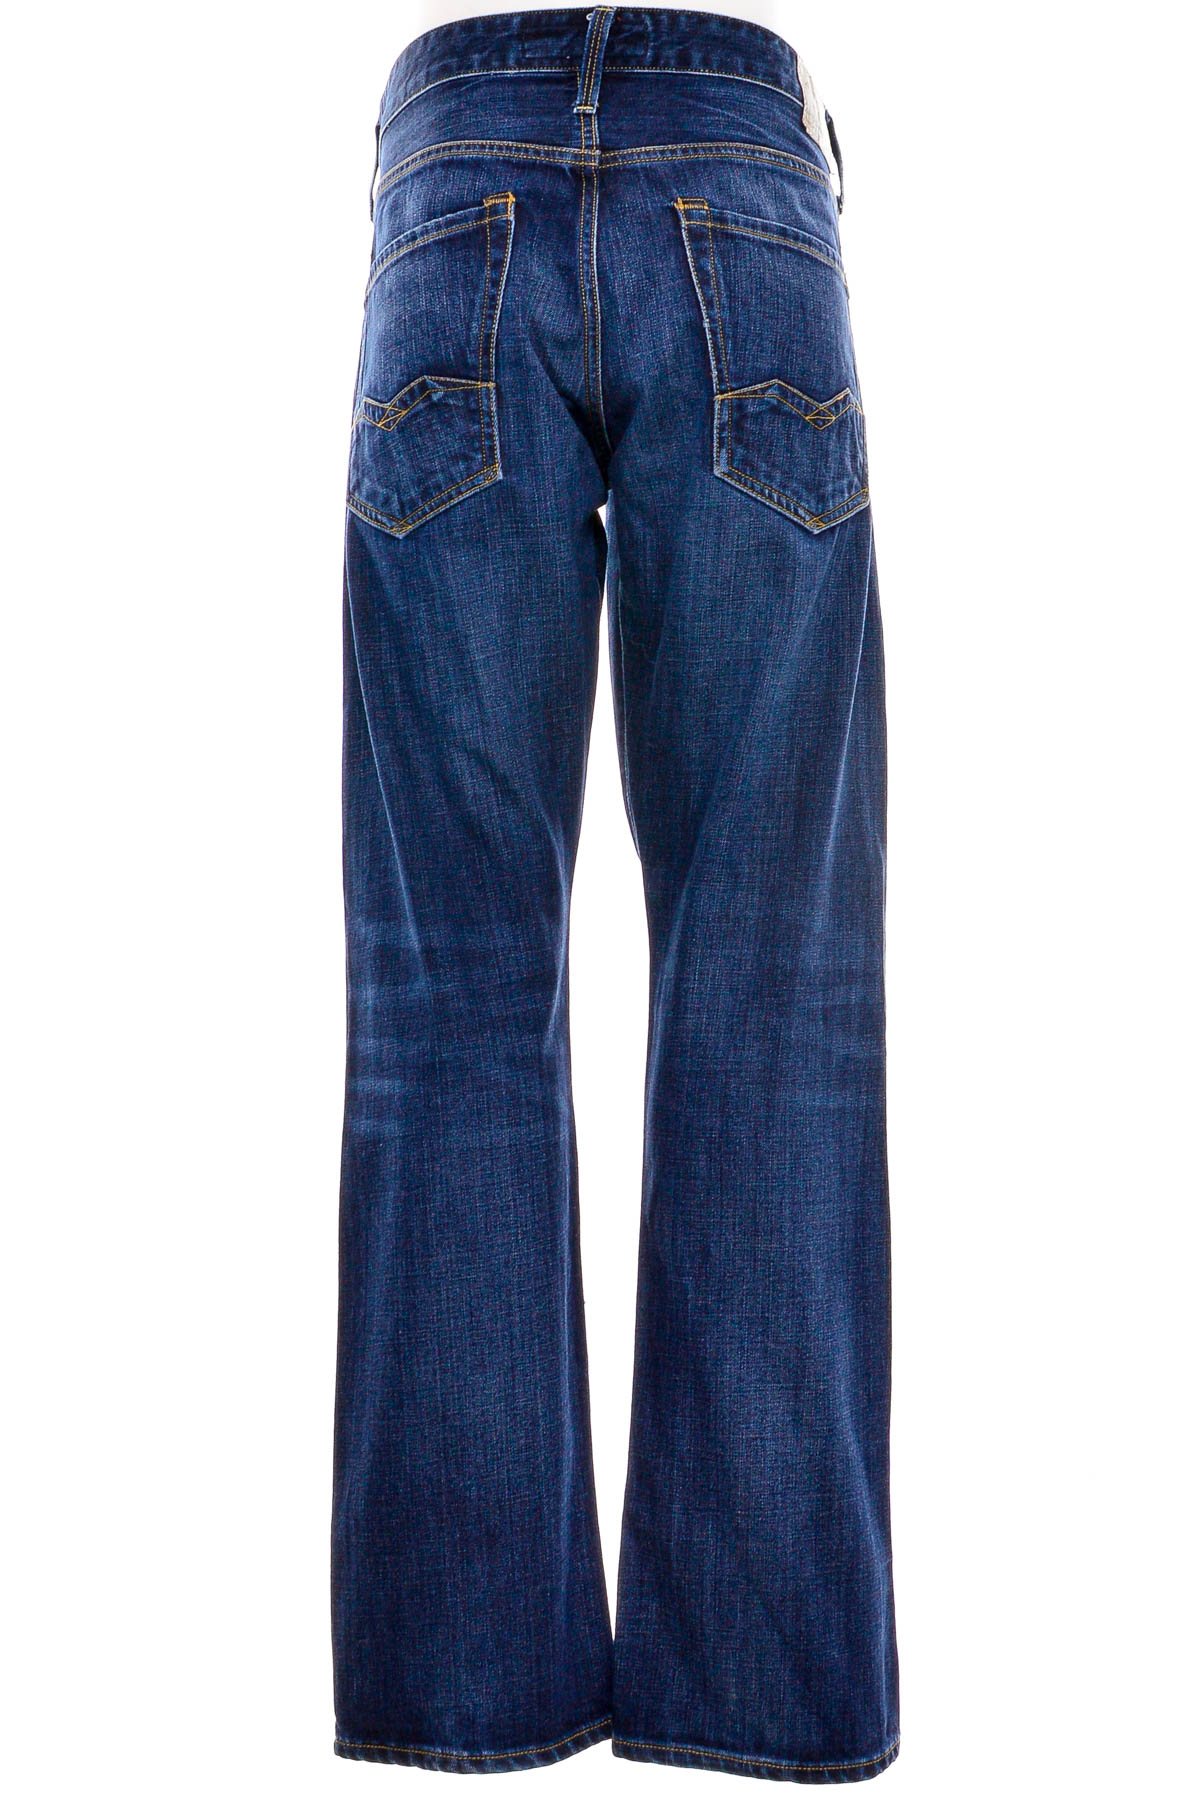 Men's jeans - REPLAY - 1